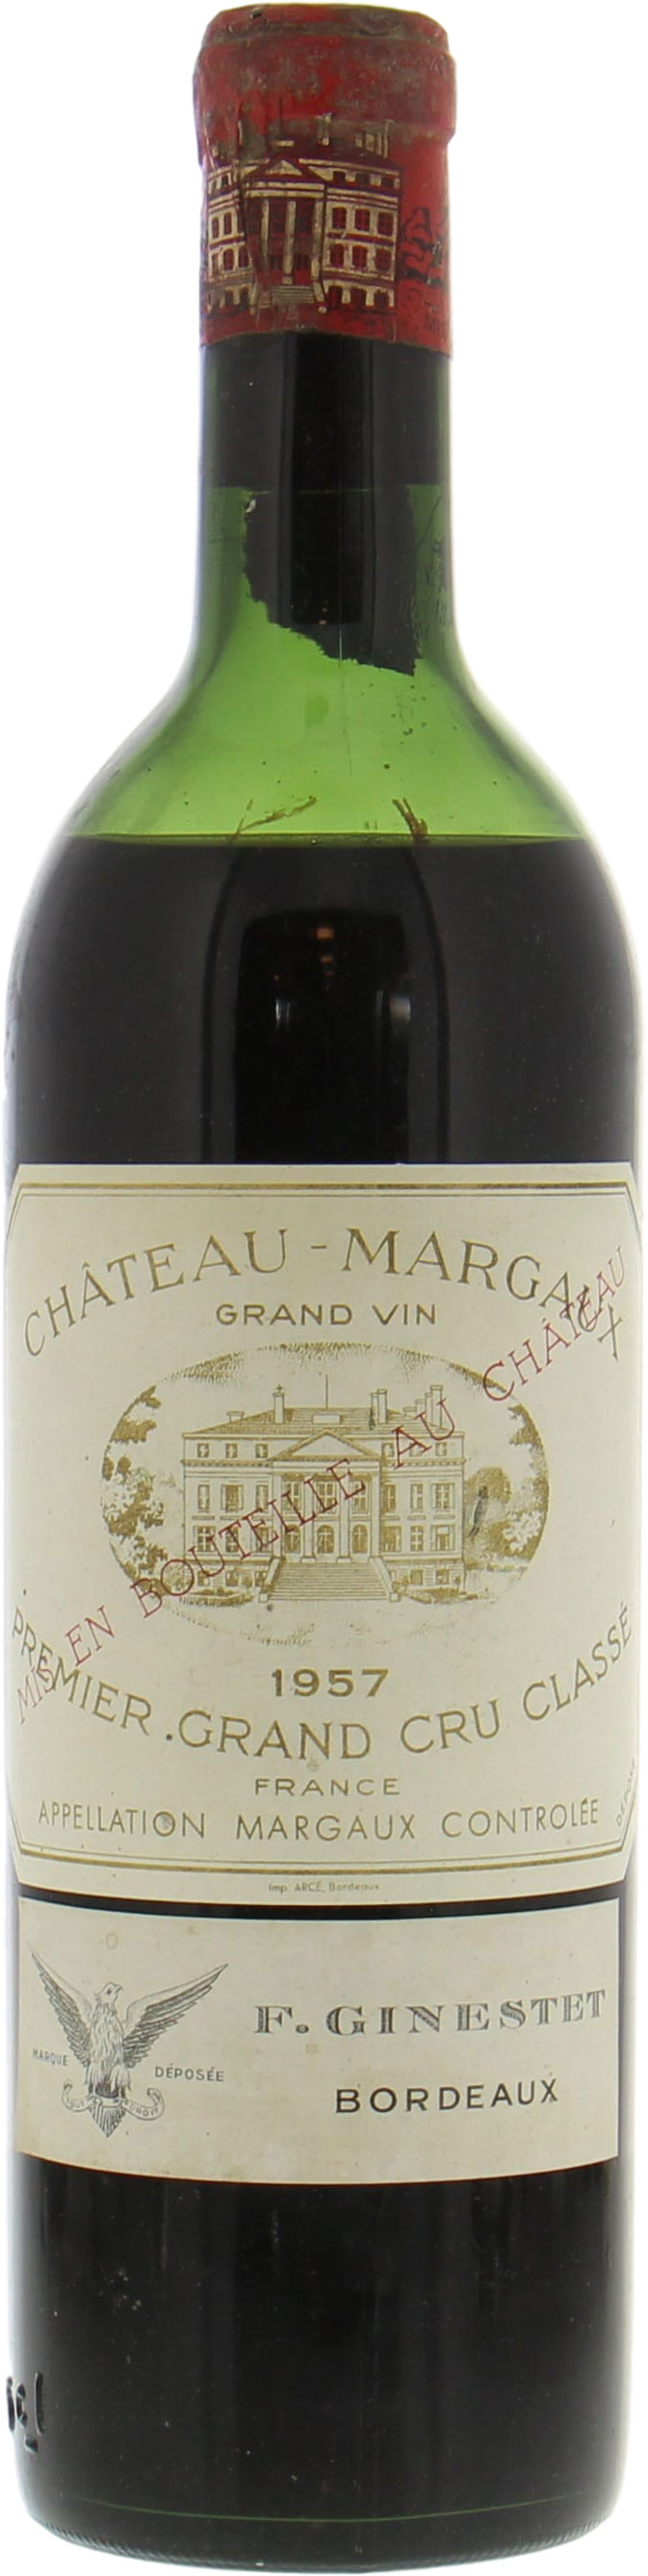 Chateau Margaux - Chateau Margaux 1957